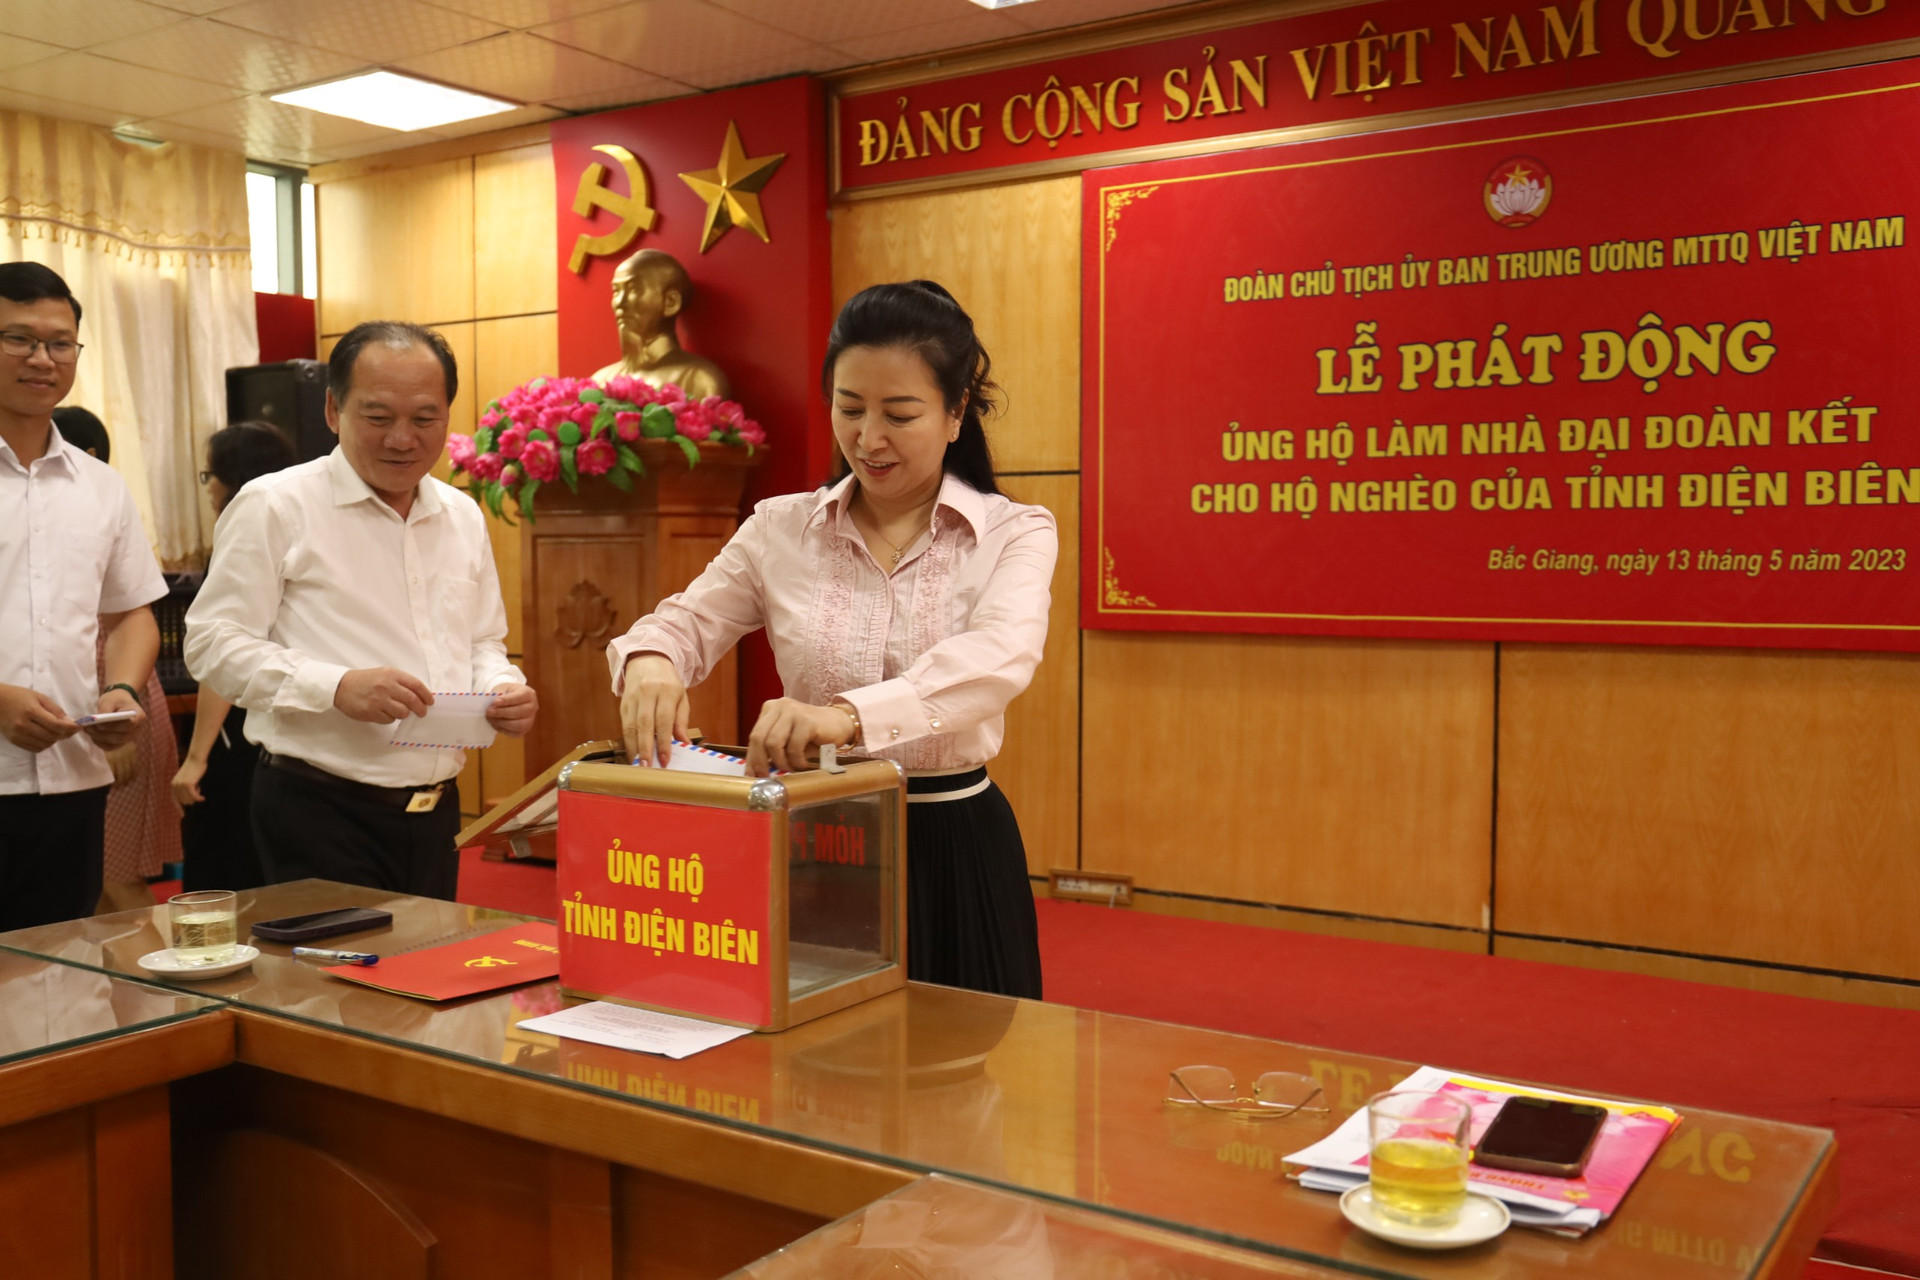 Lãnh đạo Tỉnh ủy, Ủy ban MTTQ tỉnh ủng hộ tại Lễ phát động trực tuyến toàn quốc ủng hộ làm nhà Đại đoàn kết cho hộ nghèo tỉnh Điện Biên.